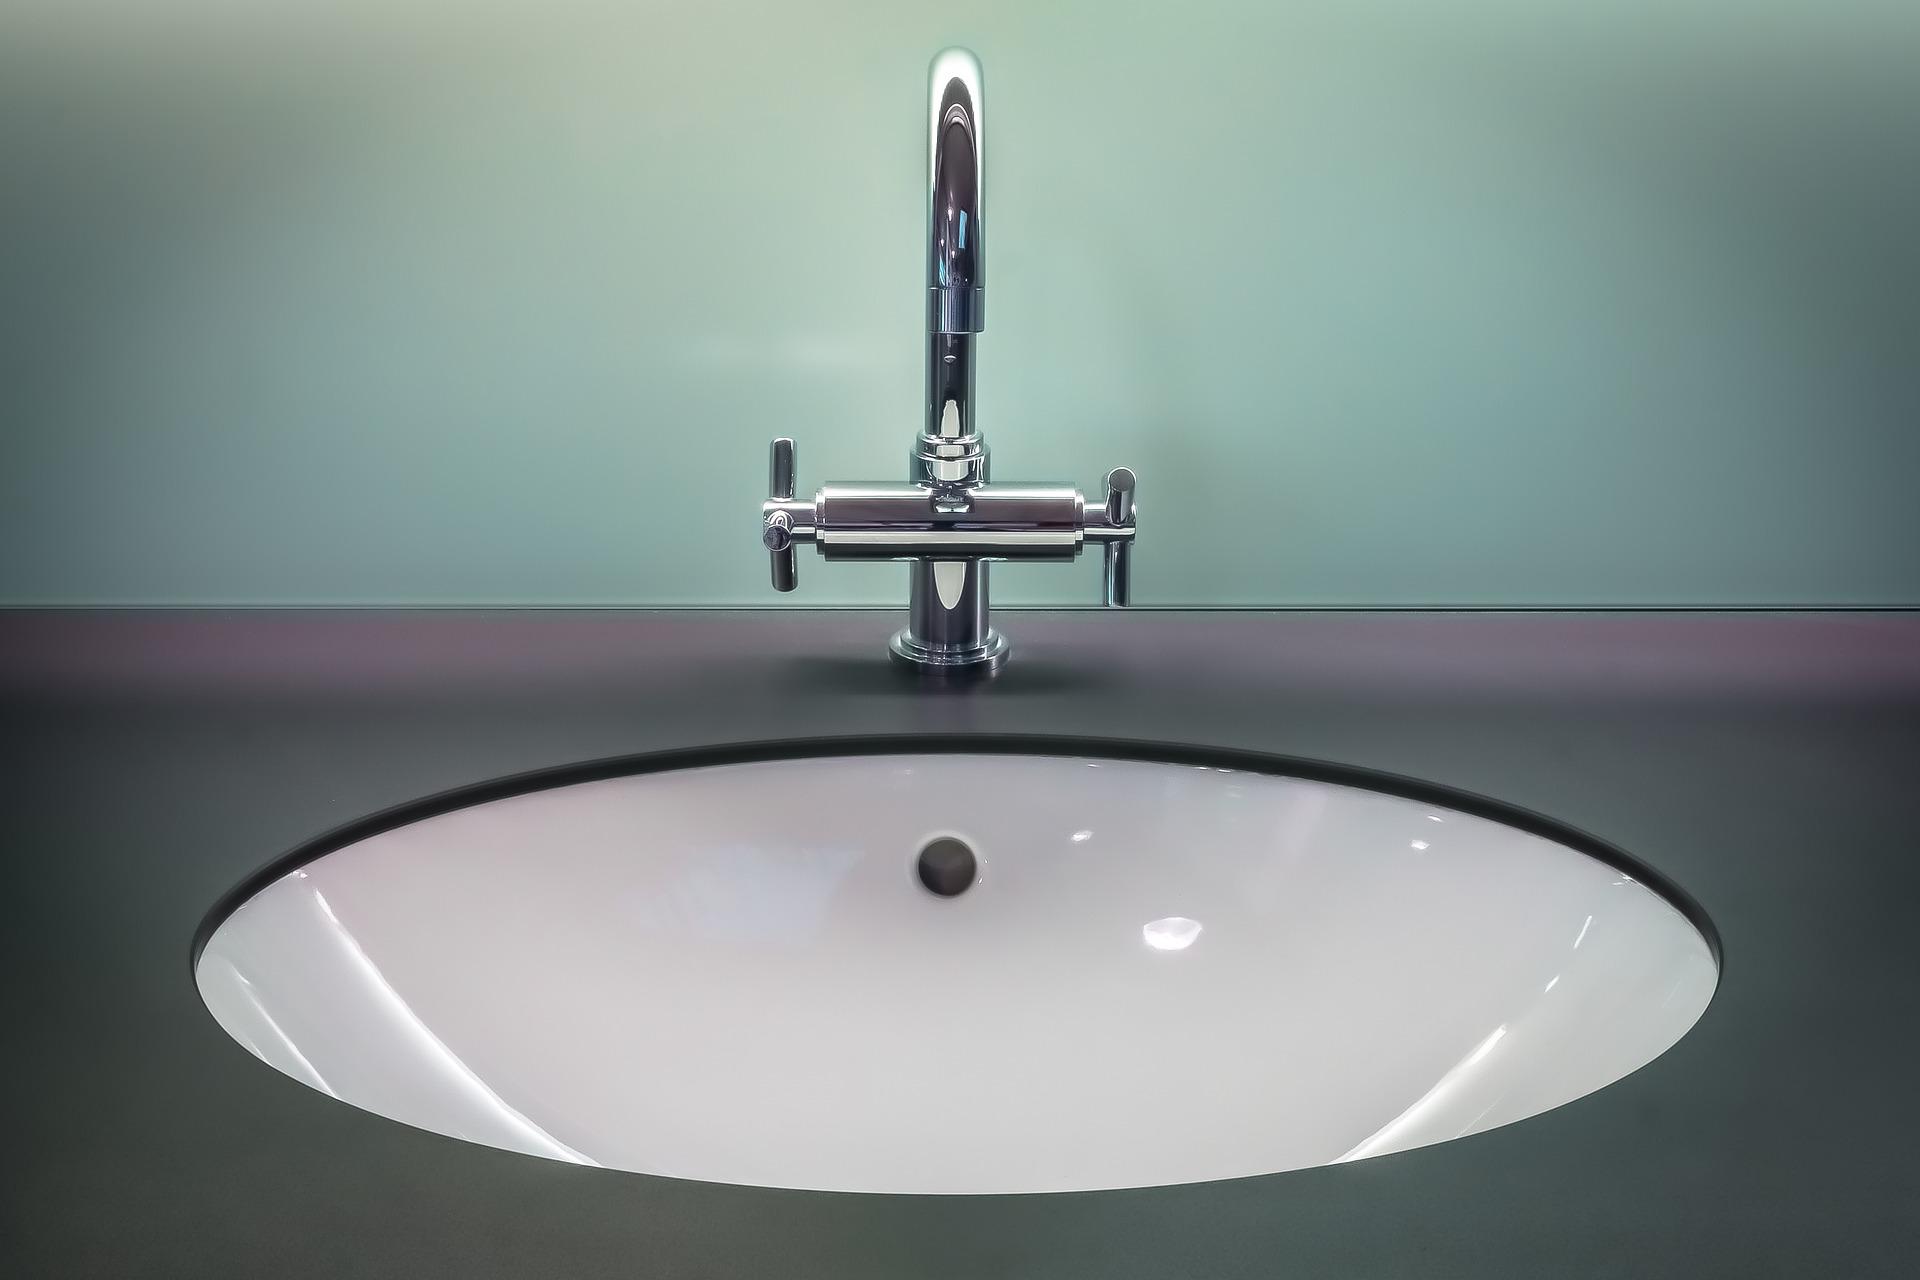 Miljard lof Mok 7x expert tips voor het schoonmaken van je badkamer | DIK.NL